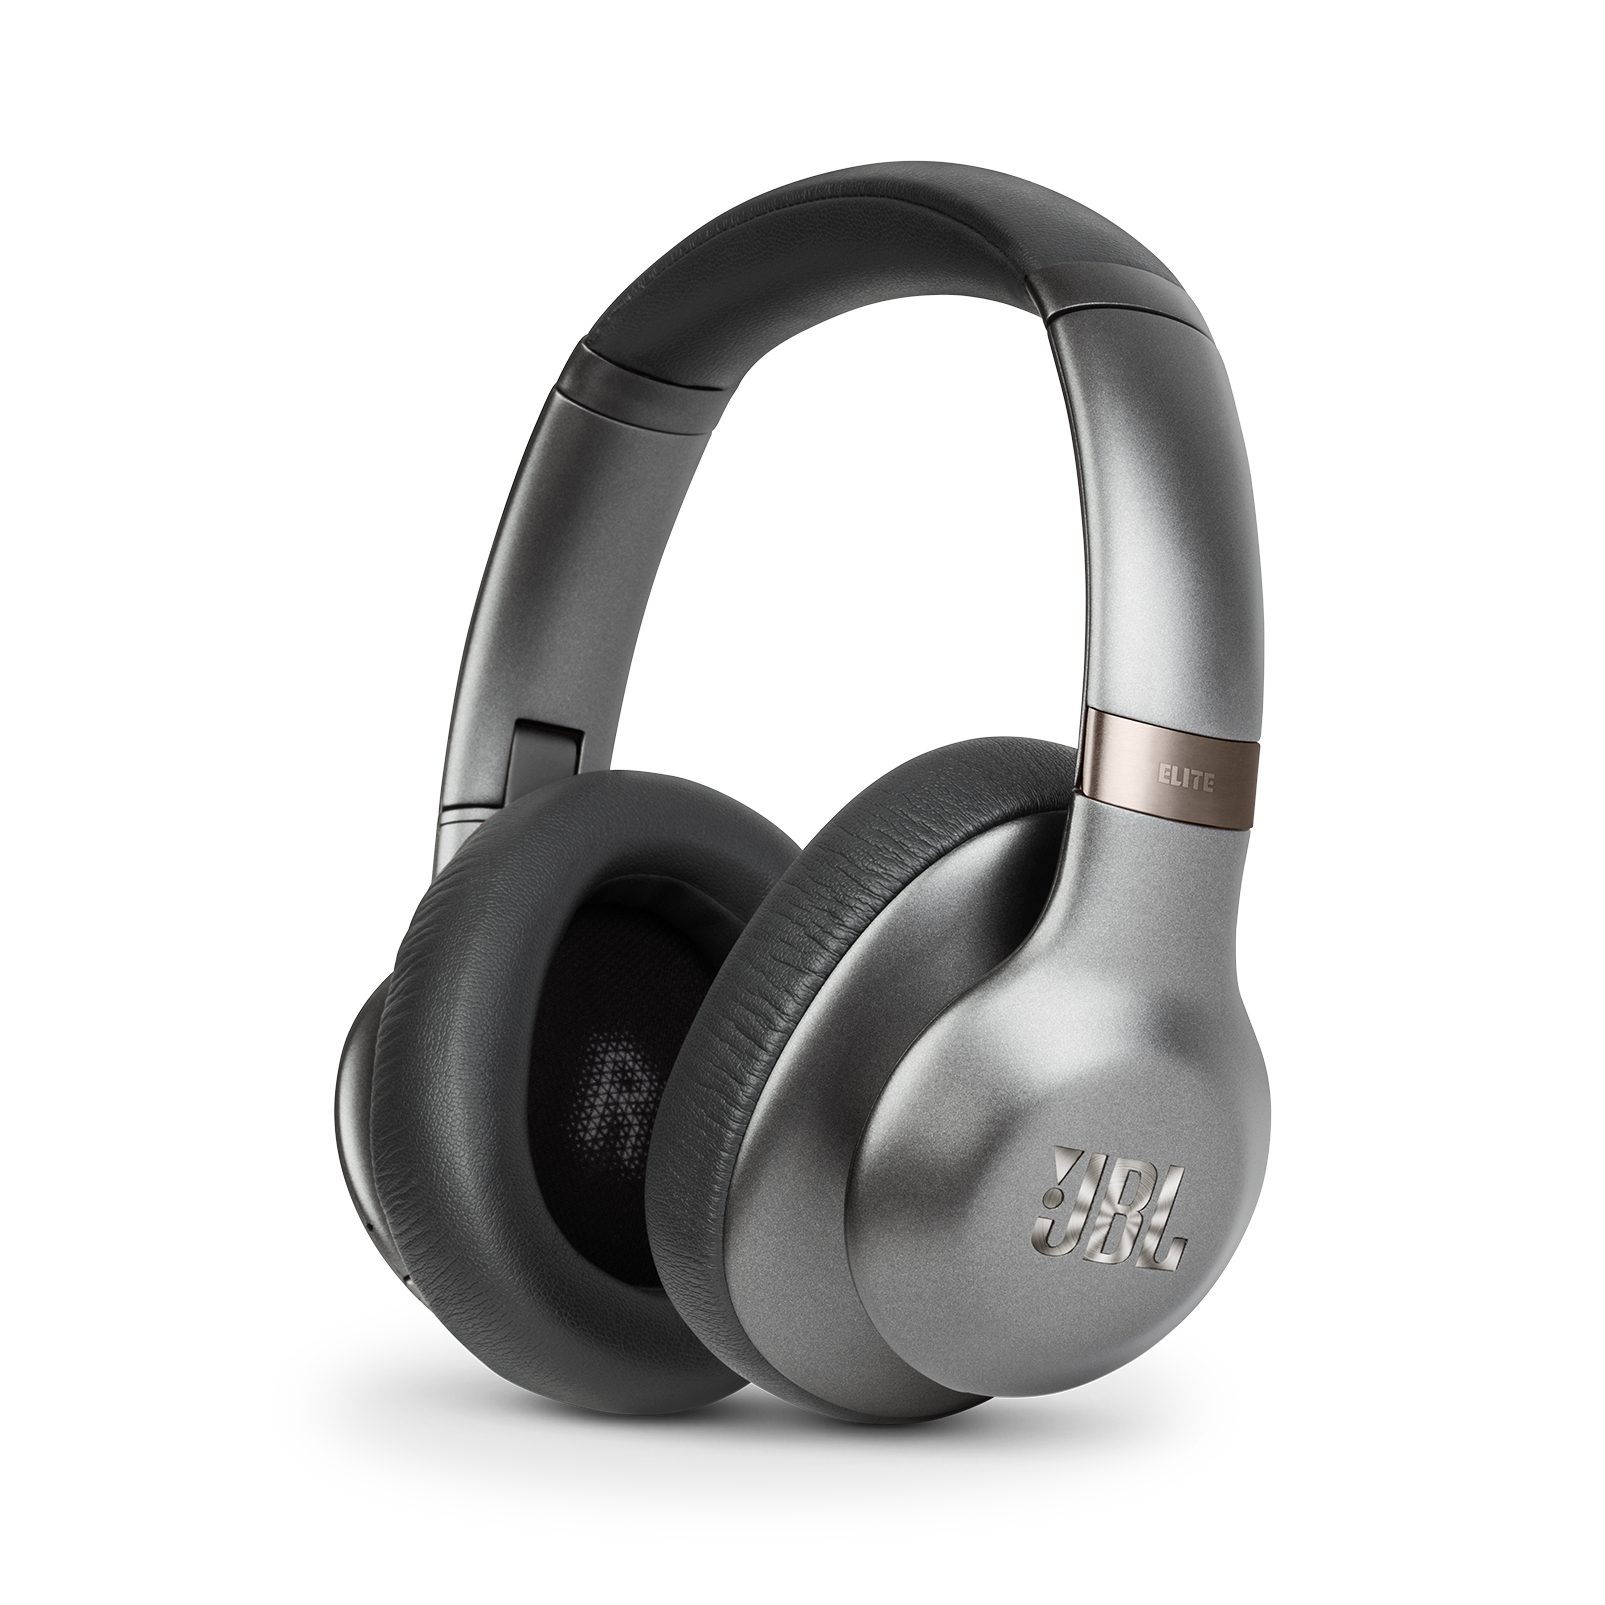 エリート750NC) : JBL /Bluetoothヘッドホン,ワイヤレス,ブルートゥース,ノイズキャンセリング